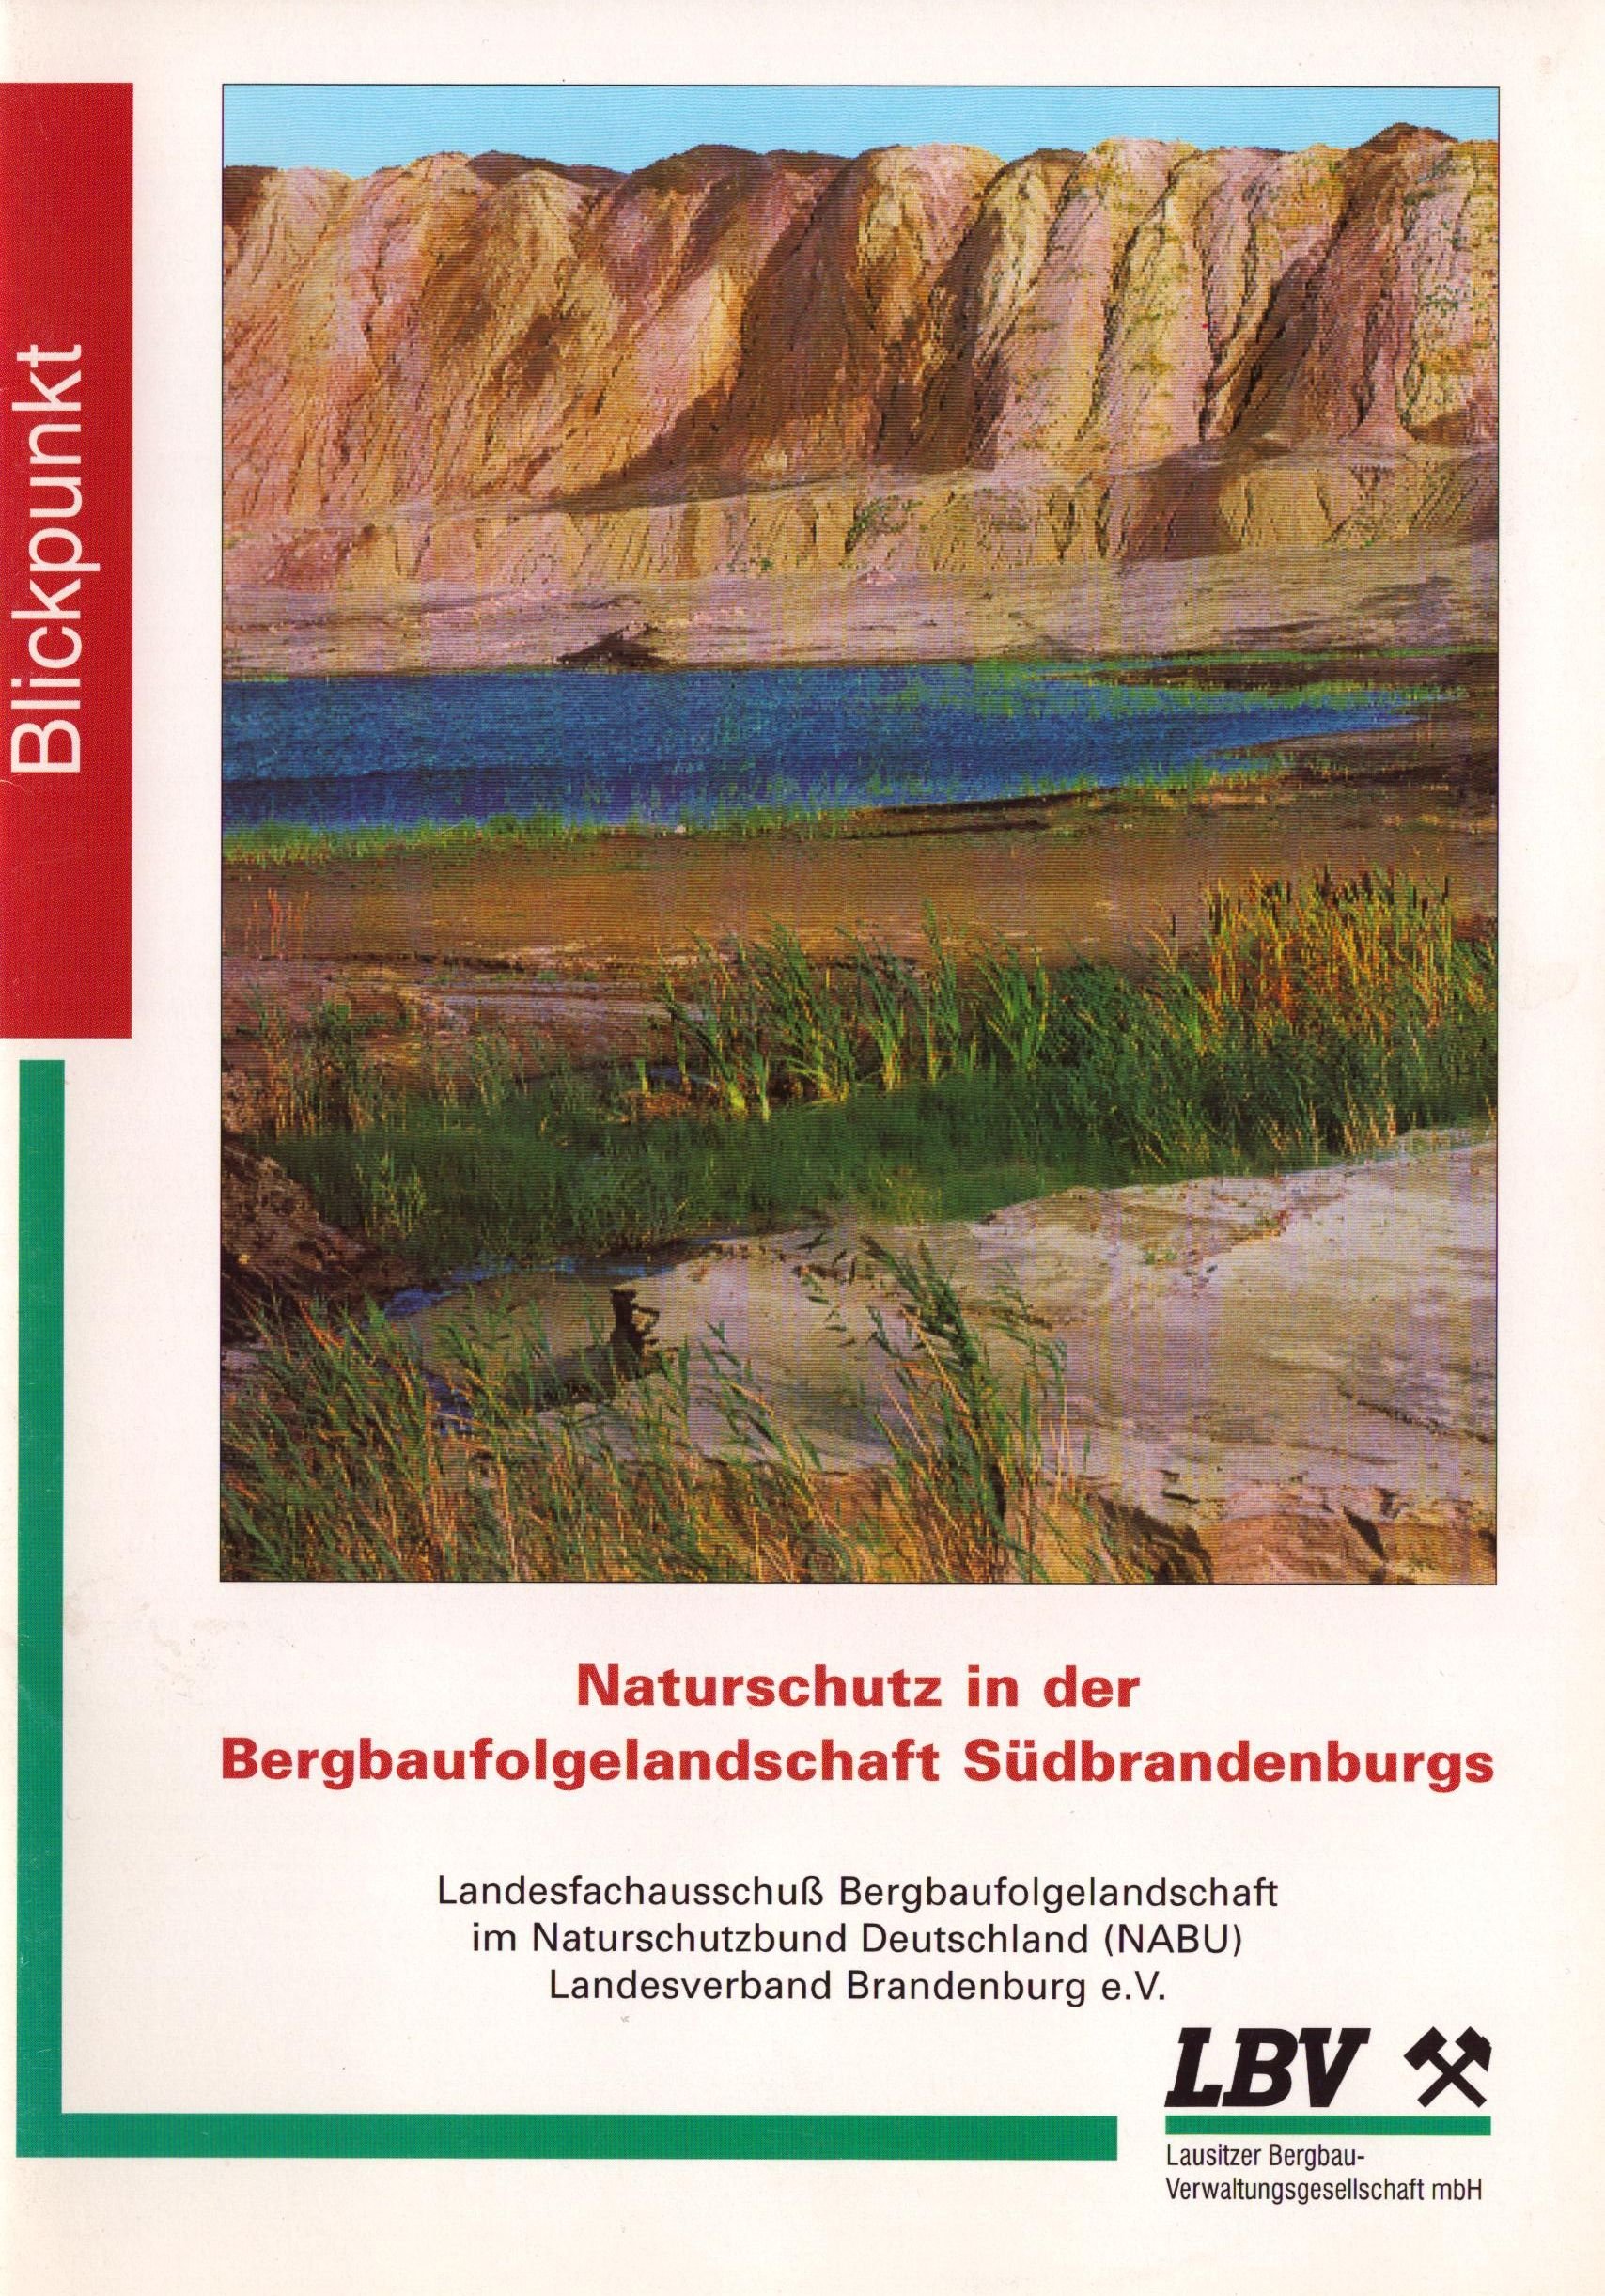 Naturschutz in der Bergbaufolgelandschaft Südbrandenburgs (Archiv SAXONIA-FREIBERG-STIFTUNG CC BY-NC-SA)